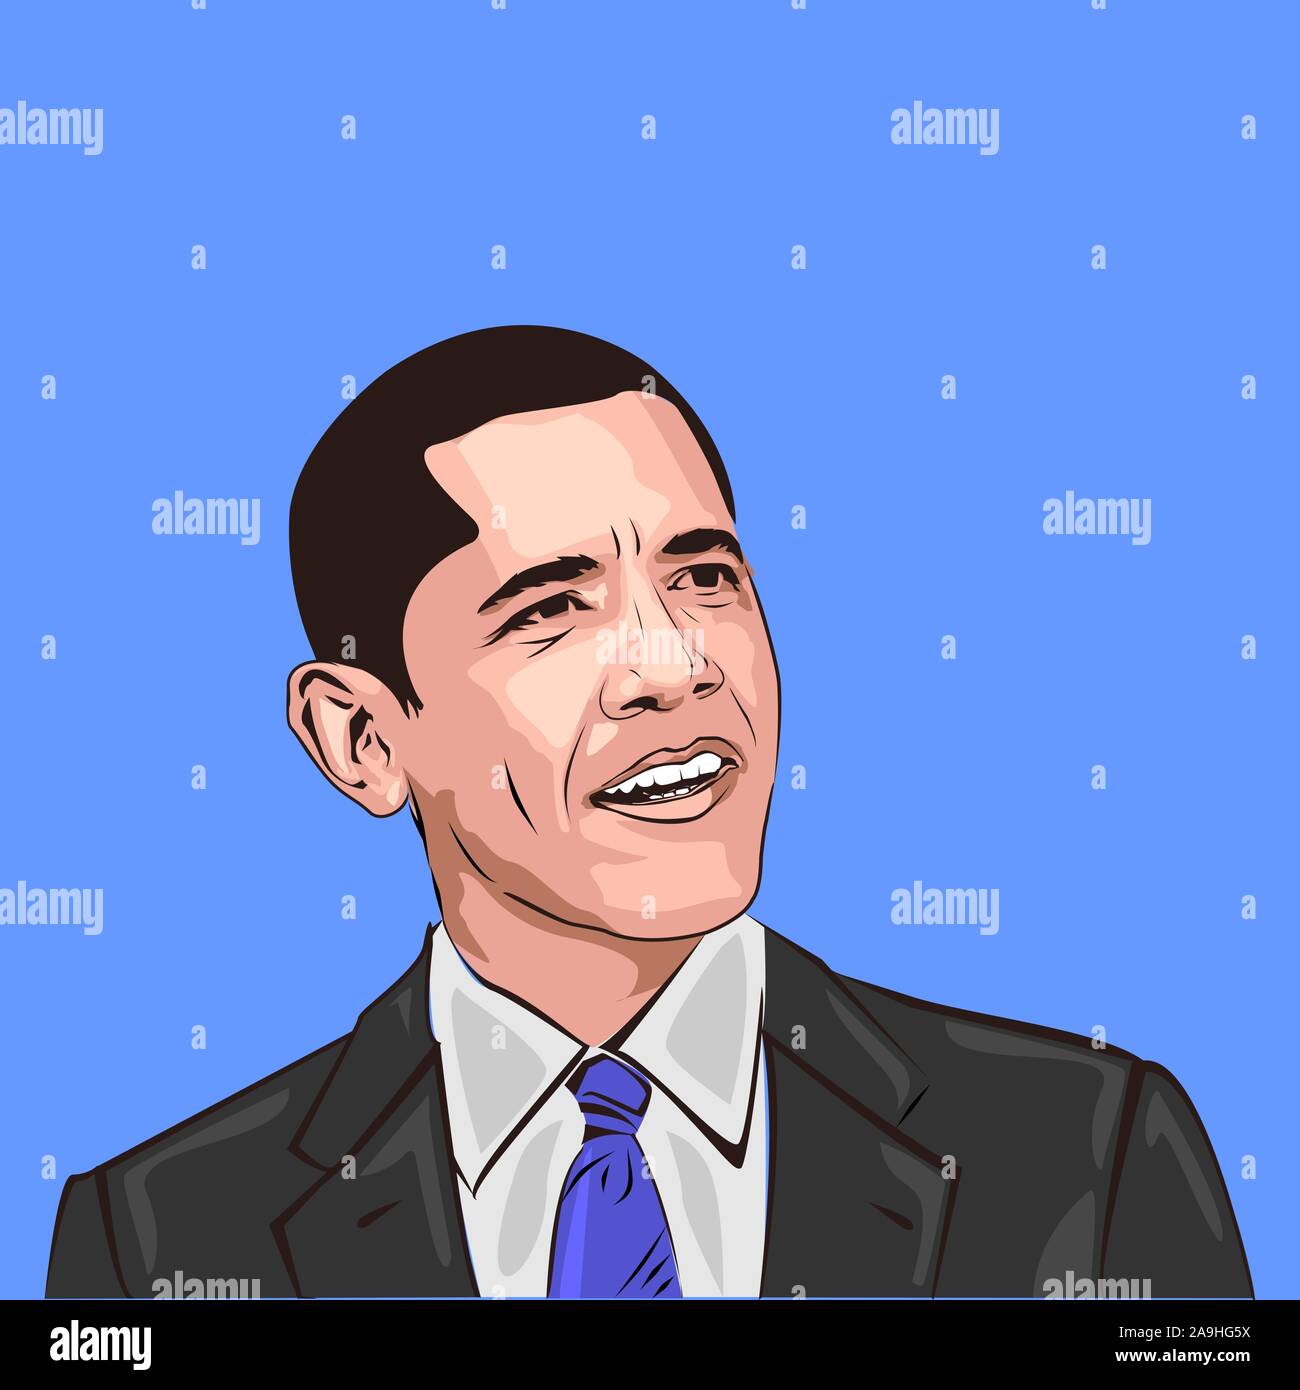 Illustration vecteur de Barack Obama. Le président des États-Unis d'Amérique. Les peuples africains. peau noire. face close up vector cartoon. Illustration de Vecteur